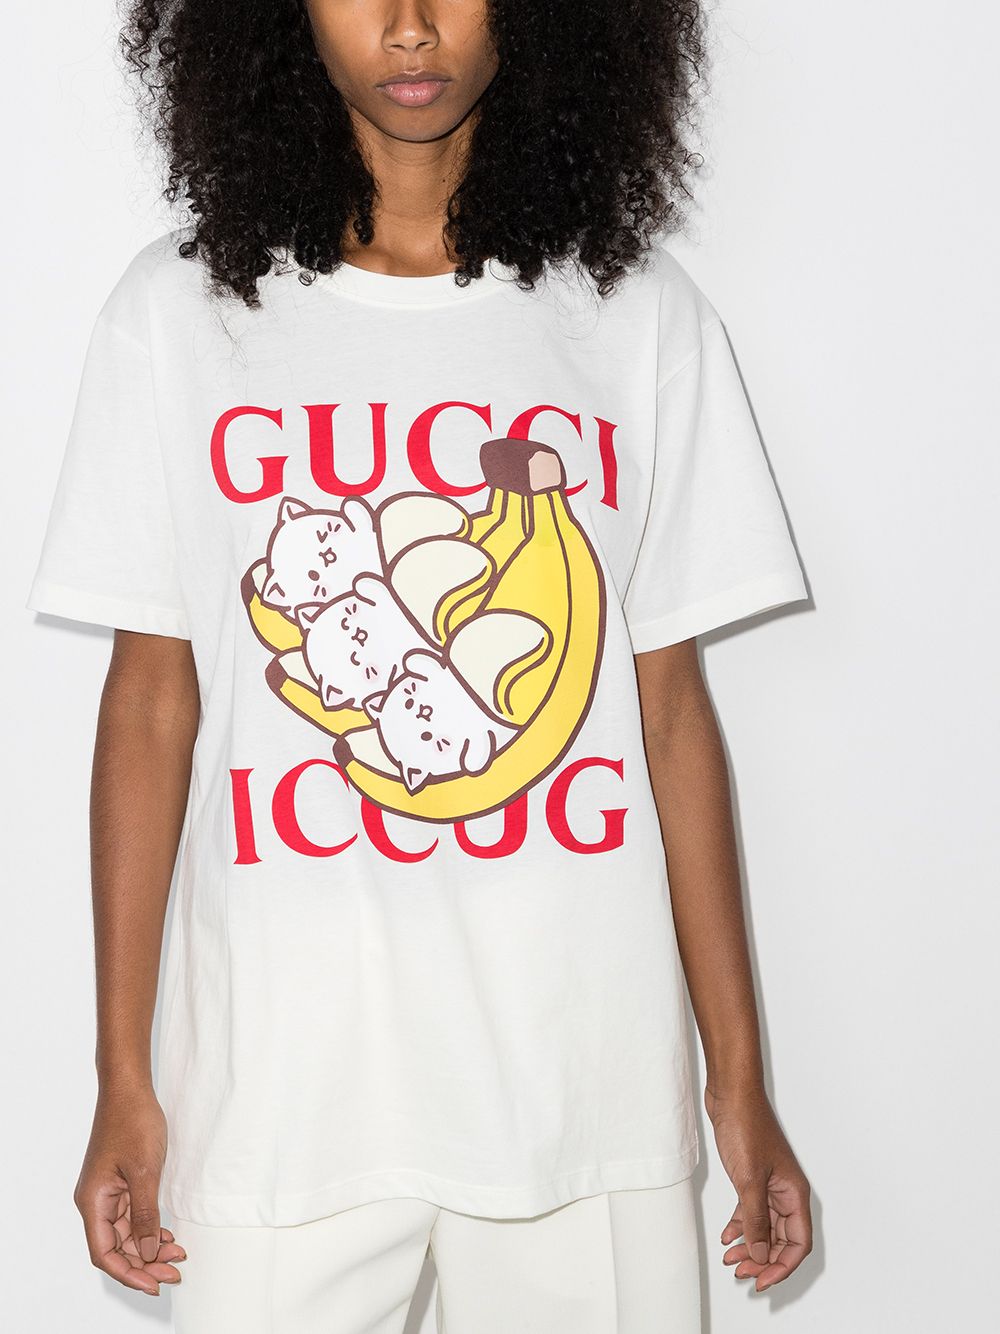 фото Gucci футболка bananya